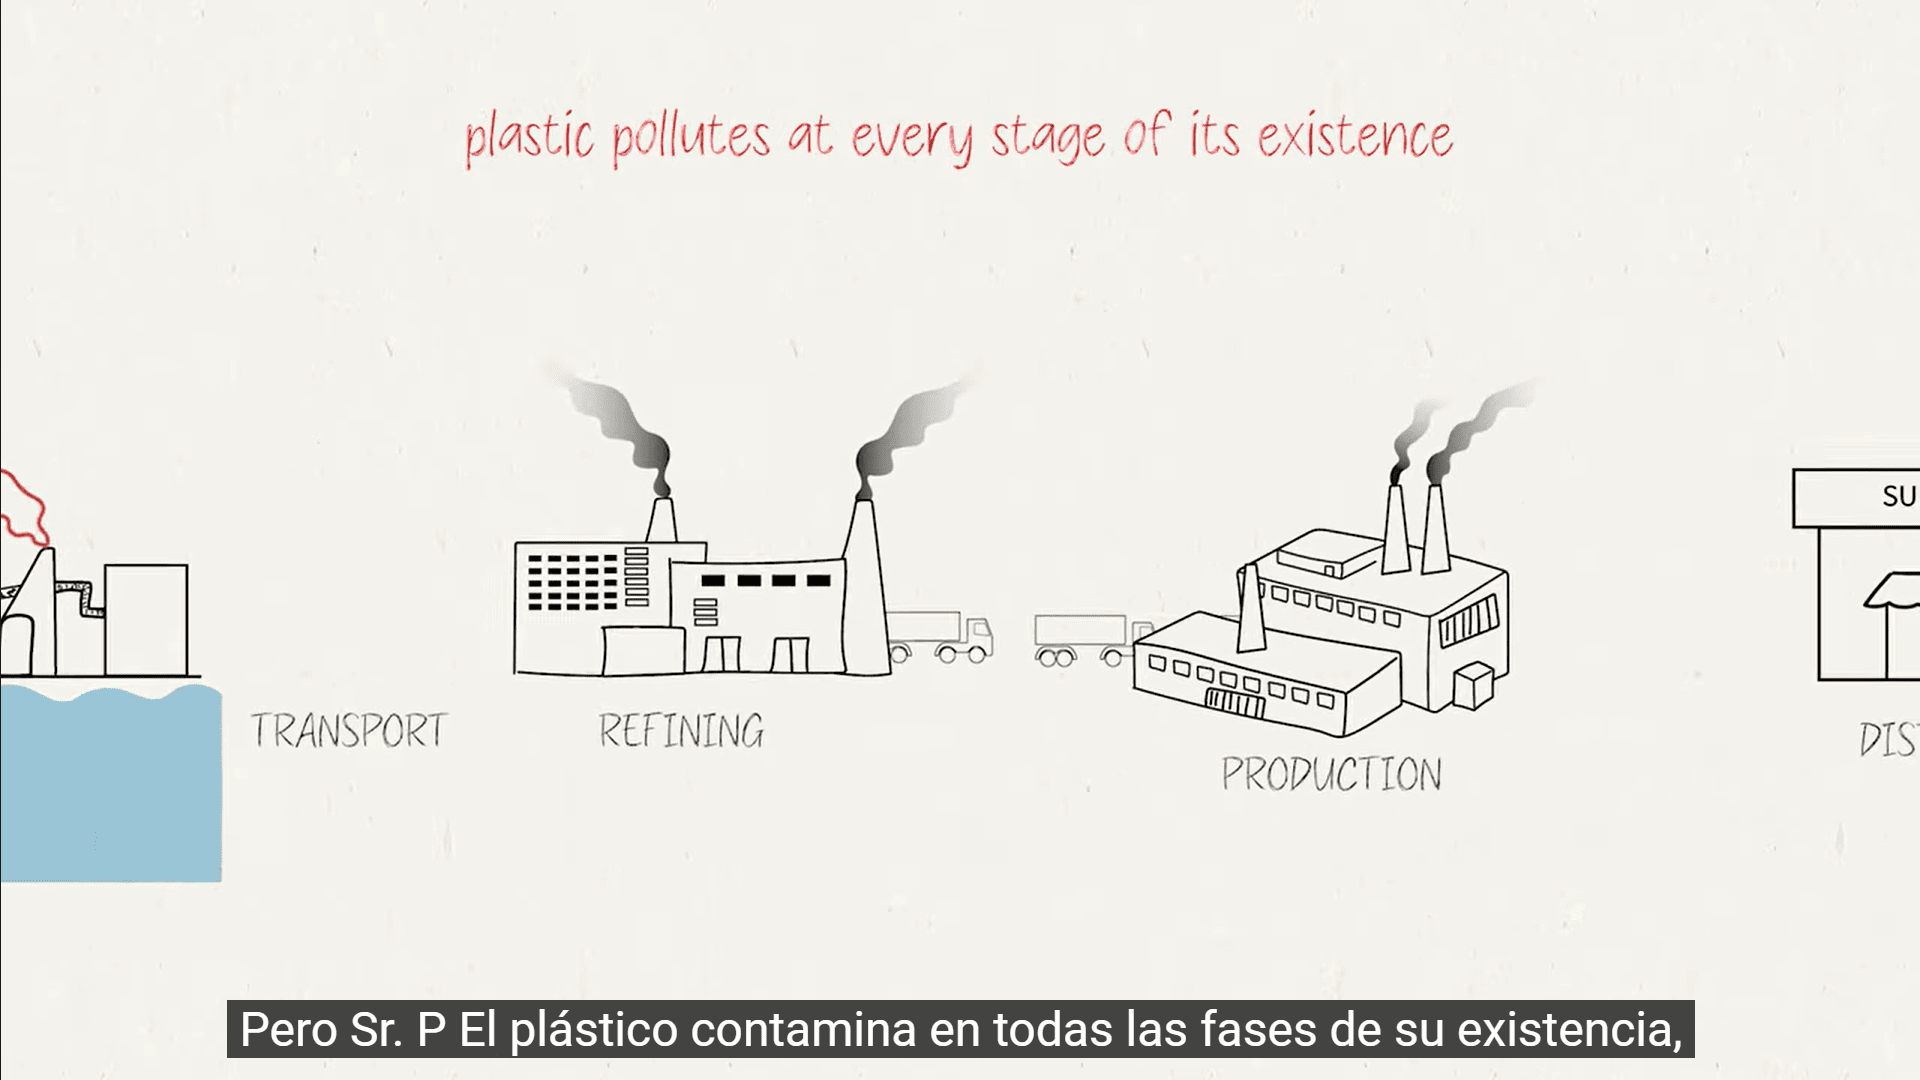 塑料生产某些阶段的草图，特别是运输、精炼和生产。屏幕上的文字：塑料在其存在的每个阶段都会产生污染；塑料污染与存在的全部问题